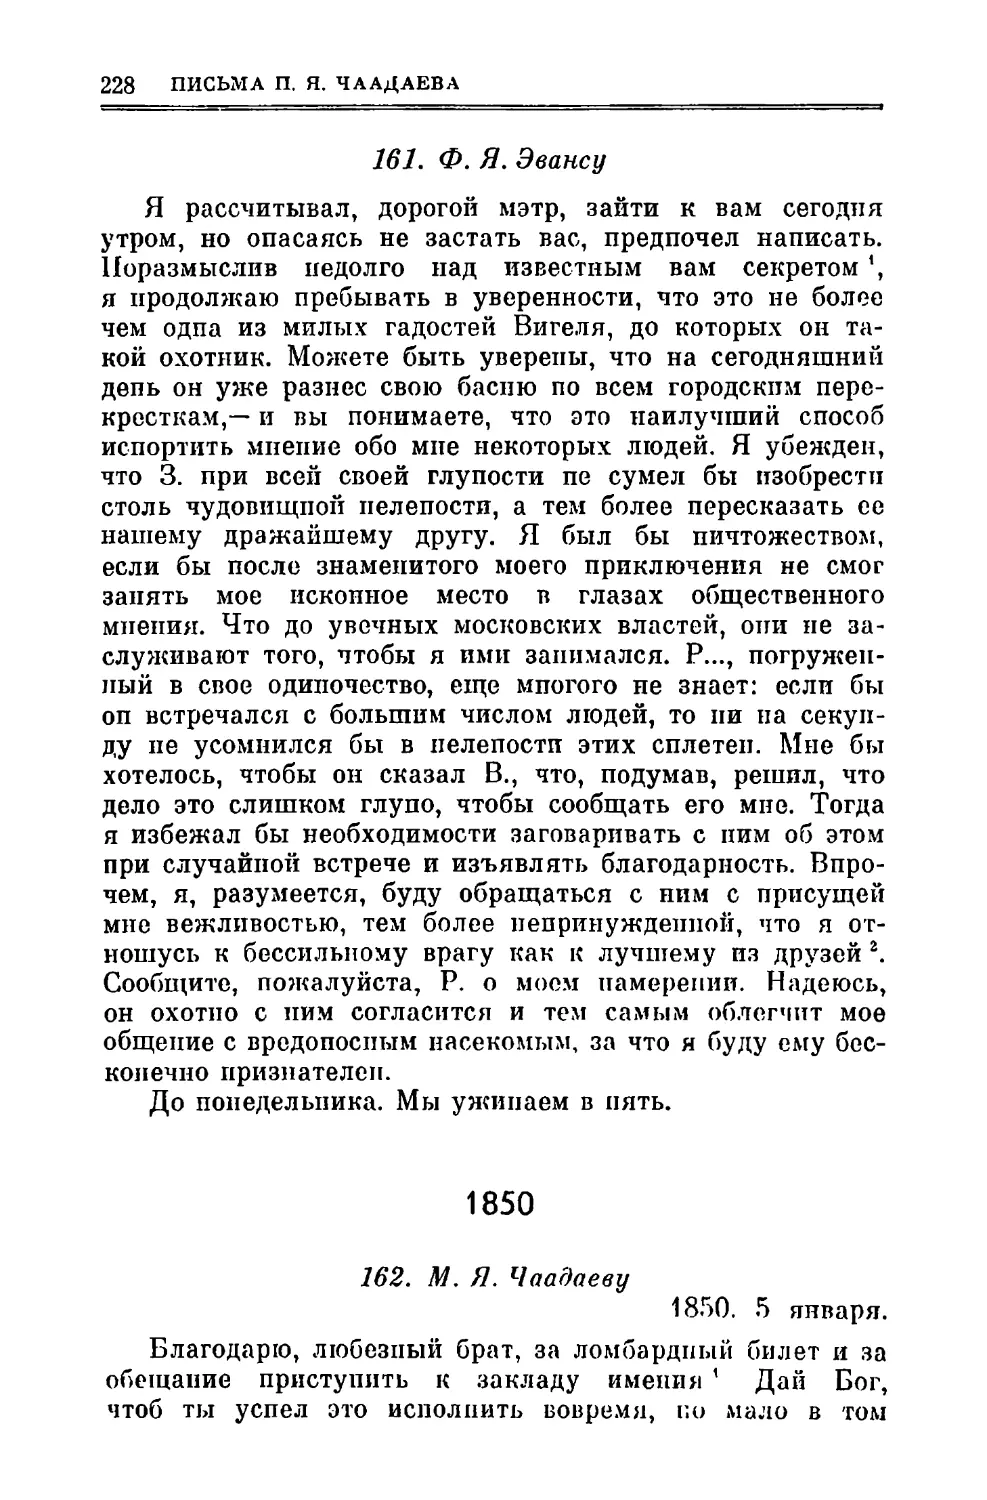 161. Эвансу Ф.Я.
1850